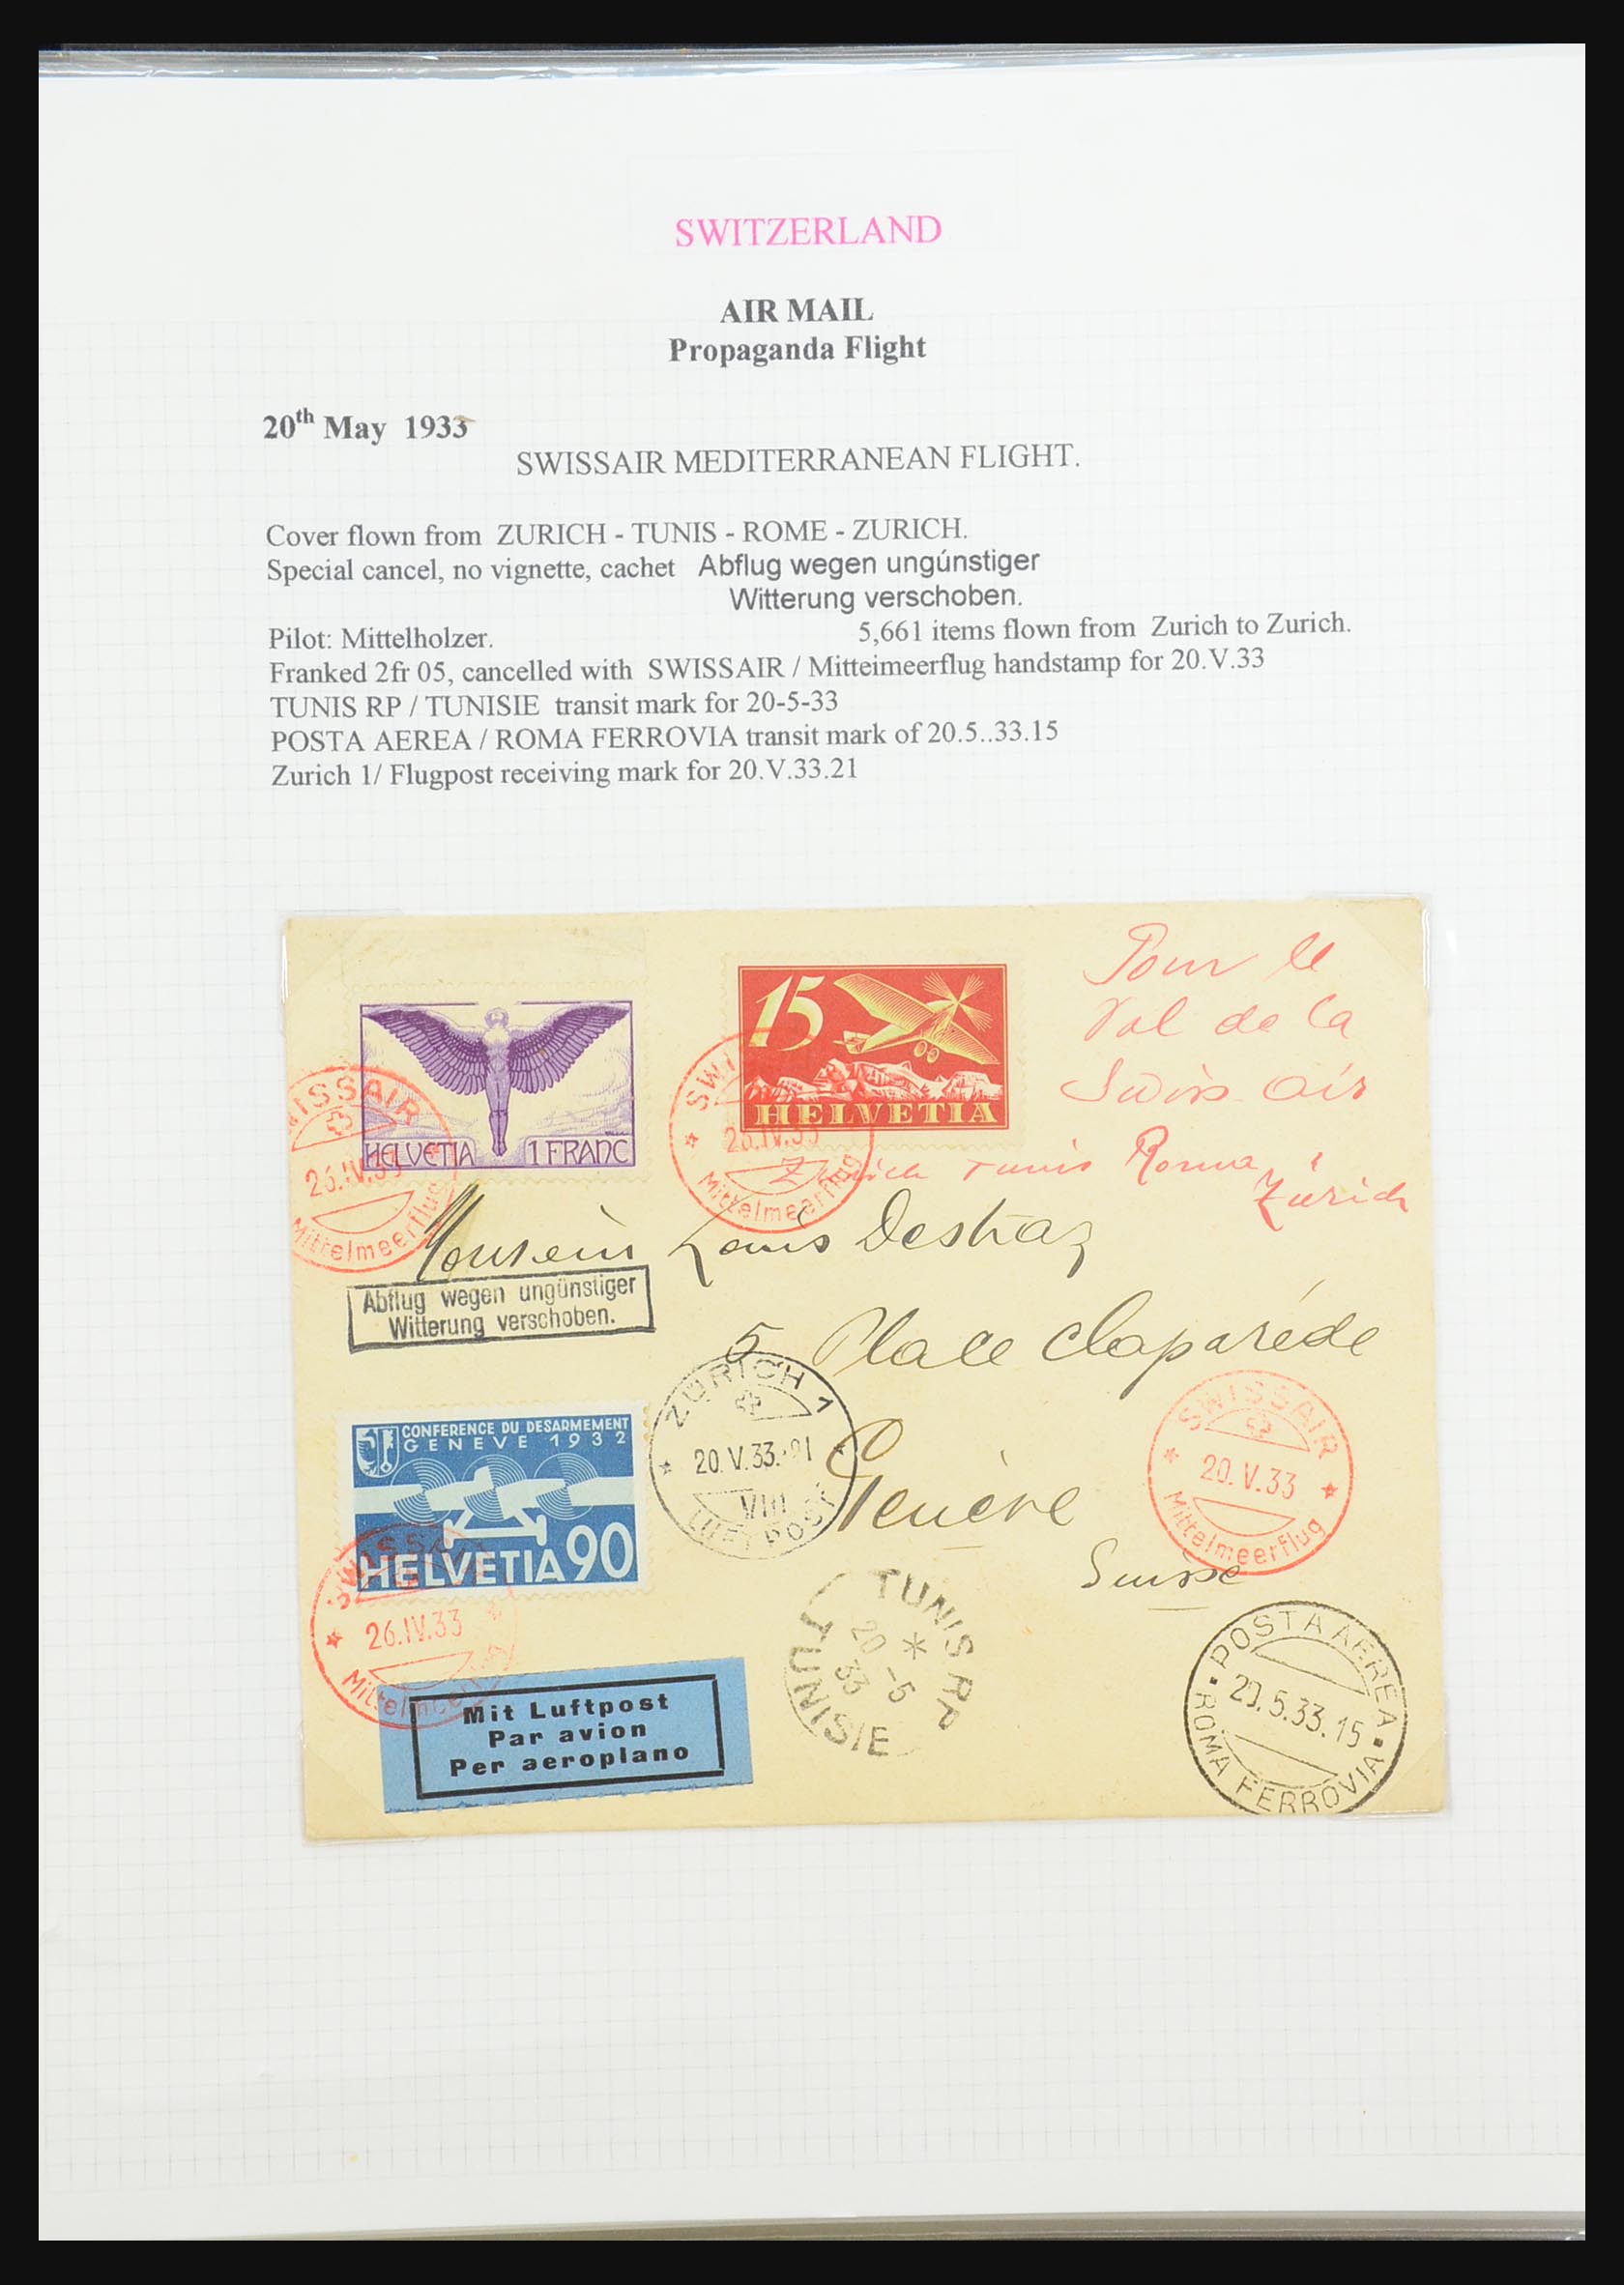 31444 061 - 31444 Zwitserland luchtpost brieven 1922-1946.